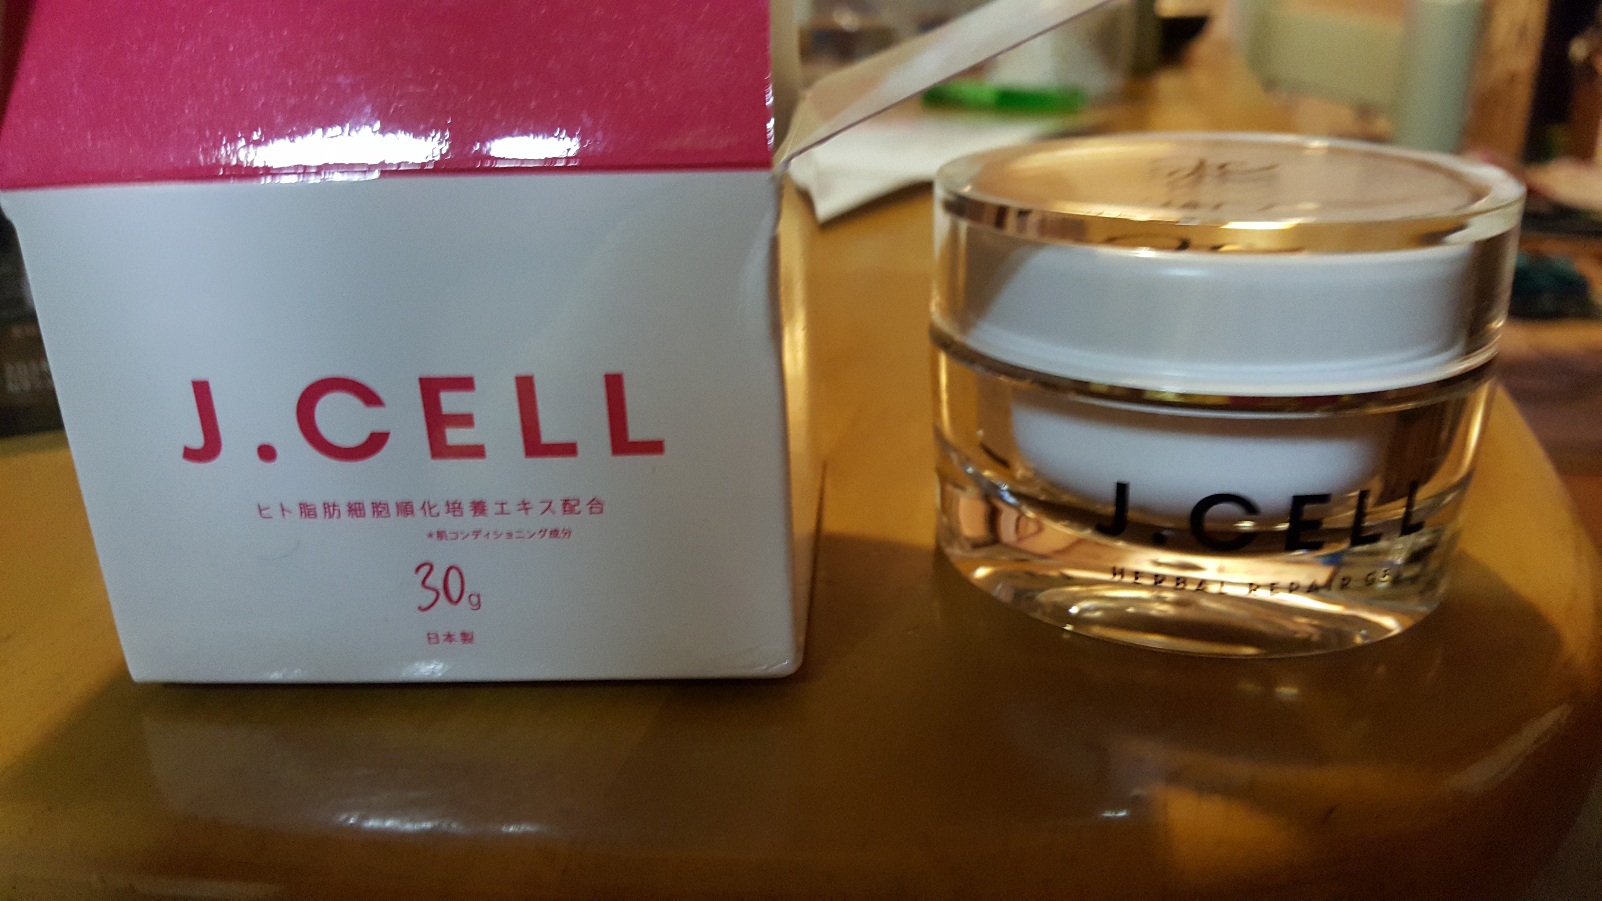 J.CELLのおしゃれな容器